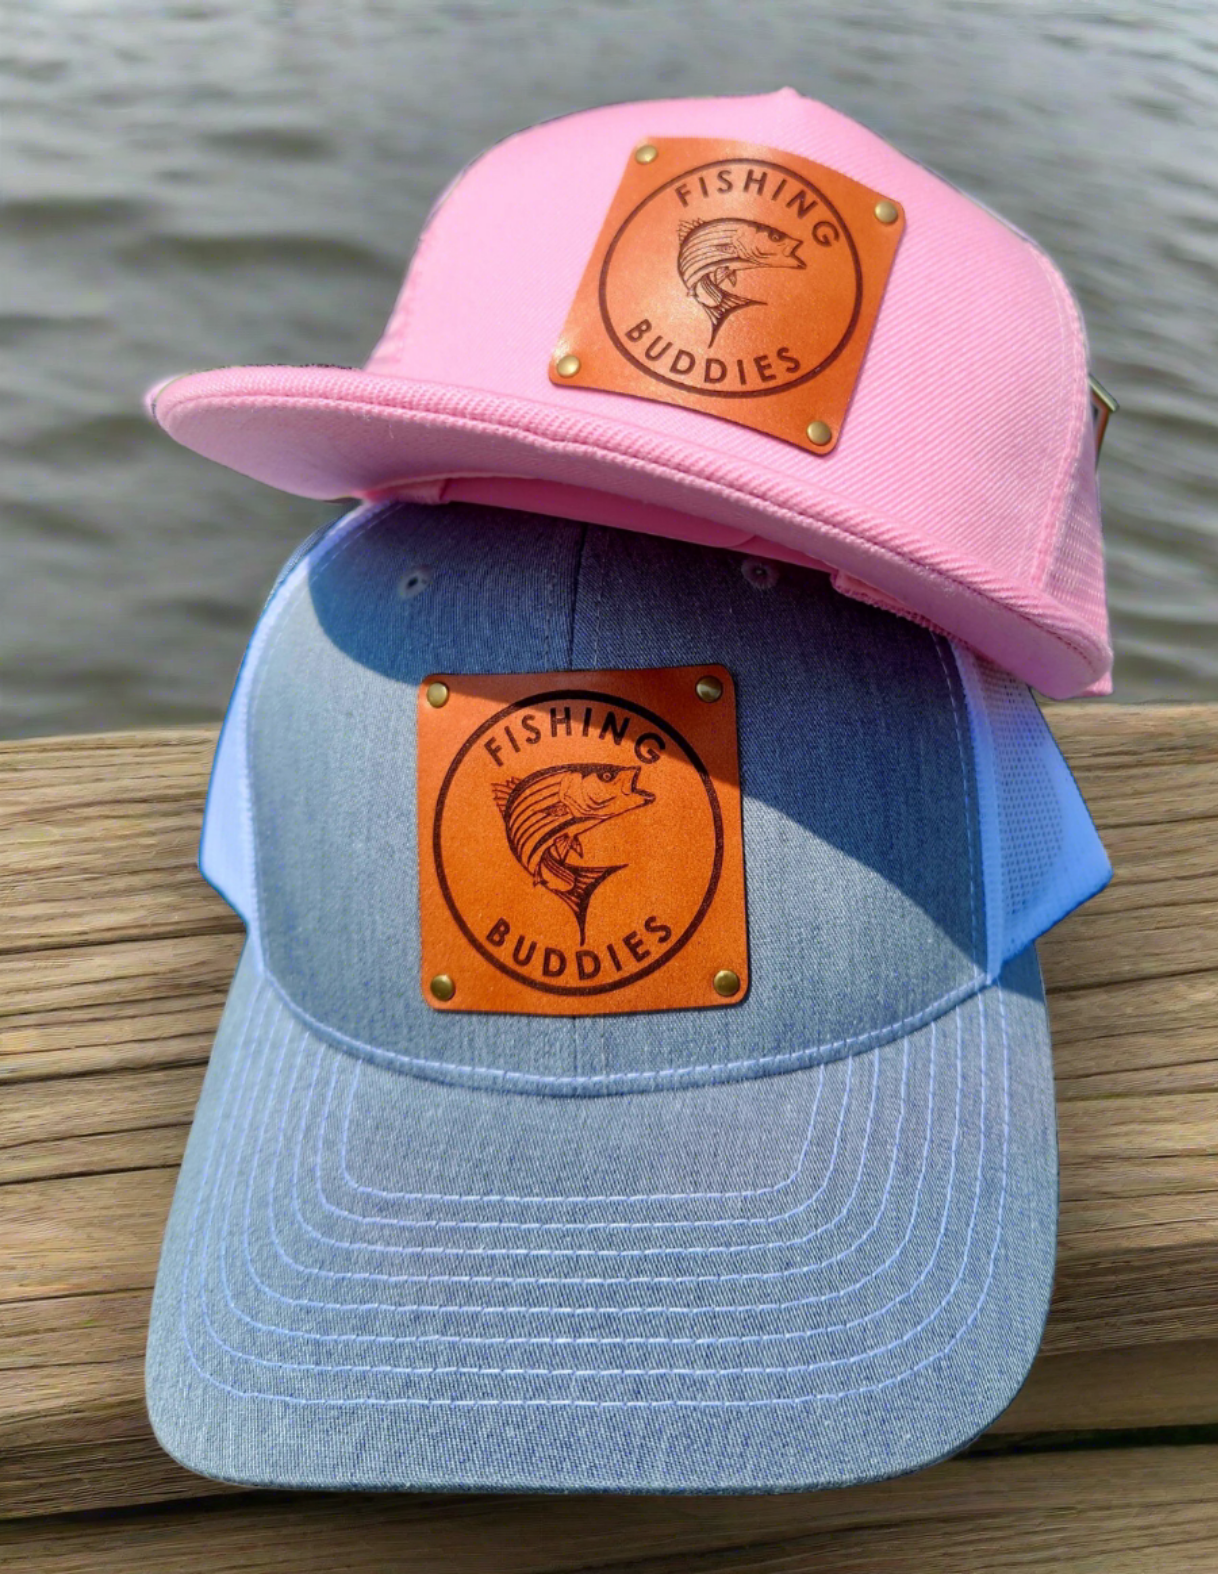 Fishing Buddies Hat Set -Dad & child fishing hat set